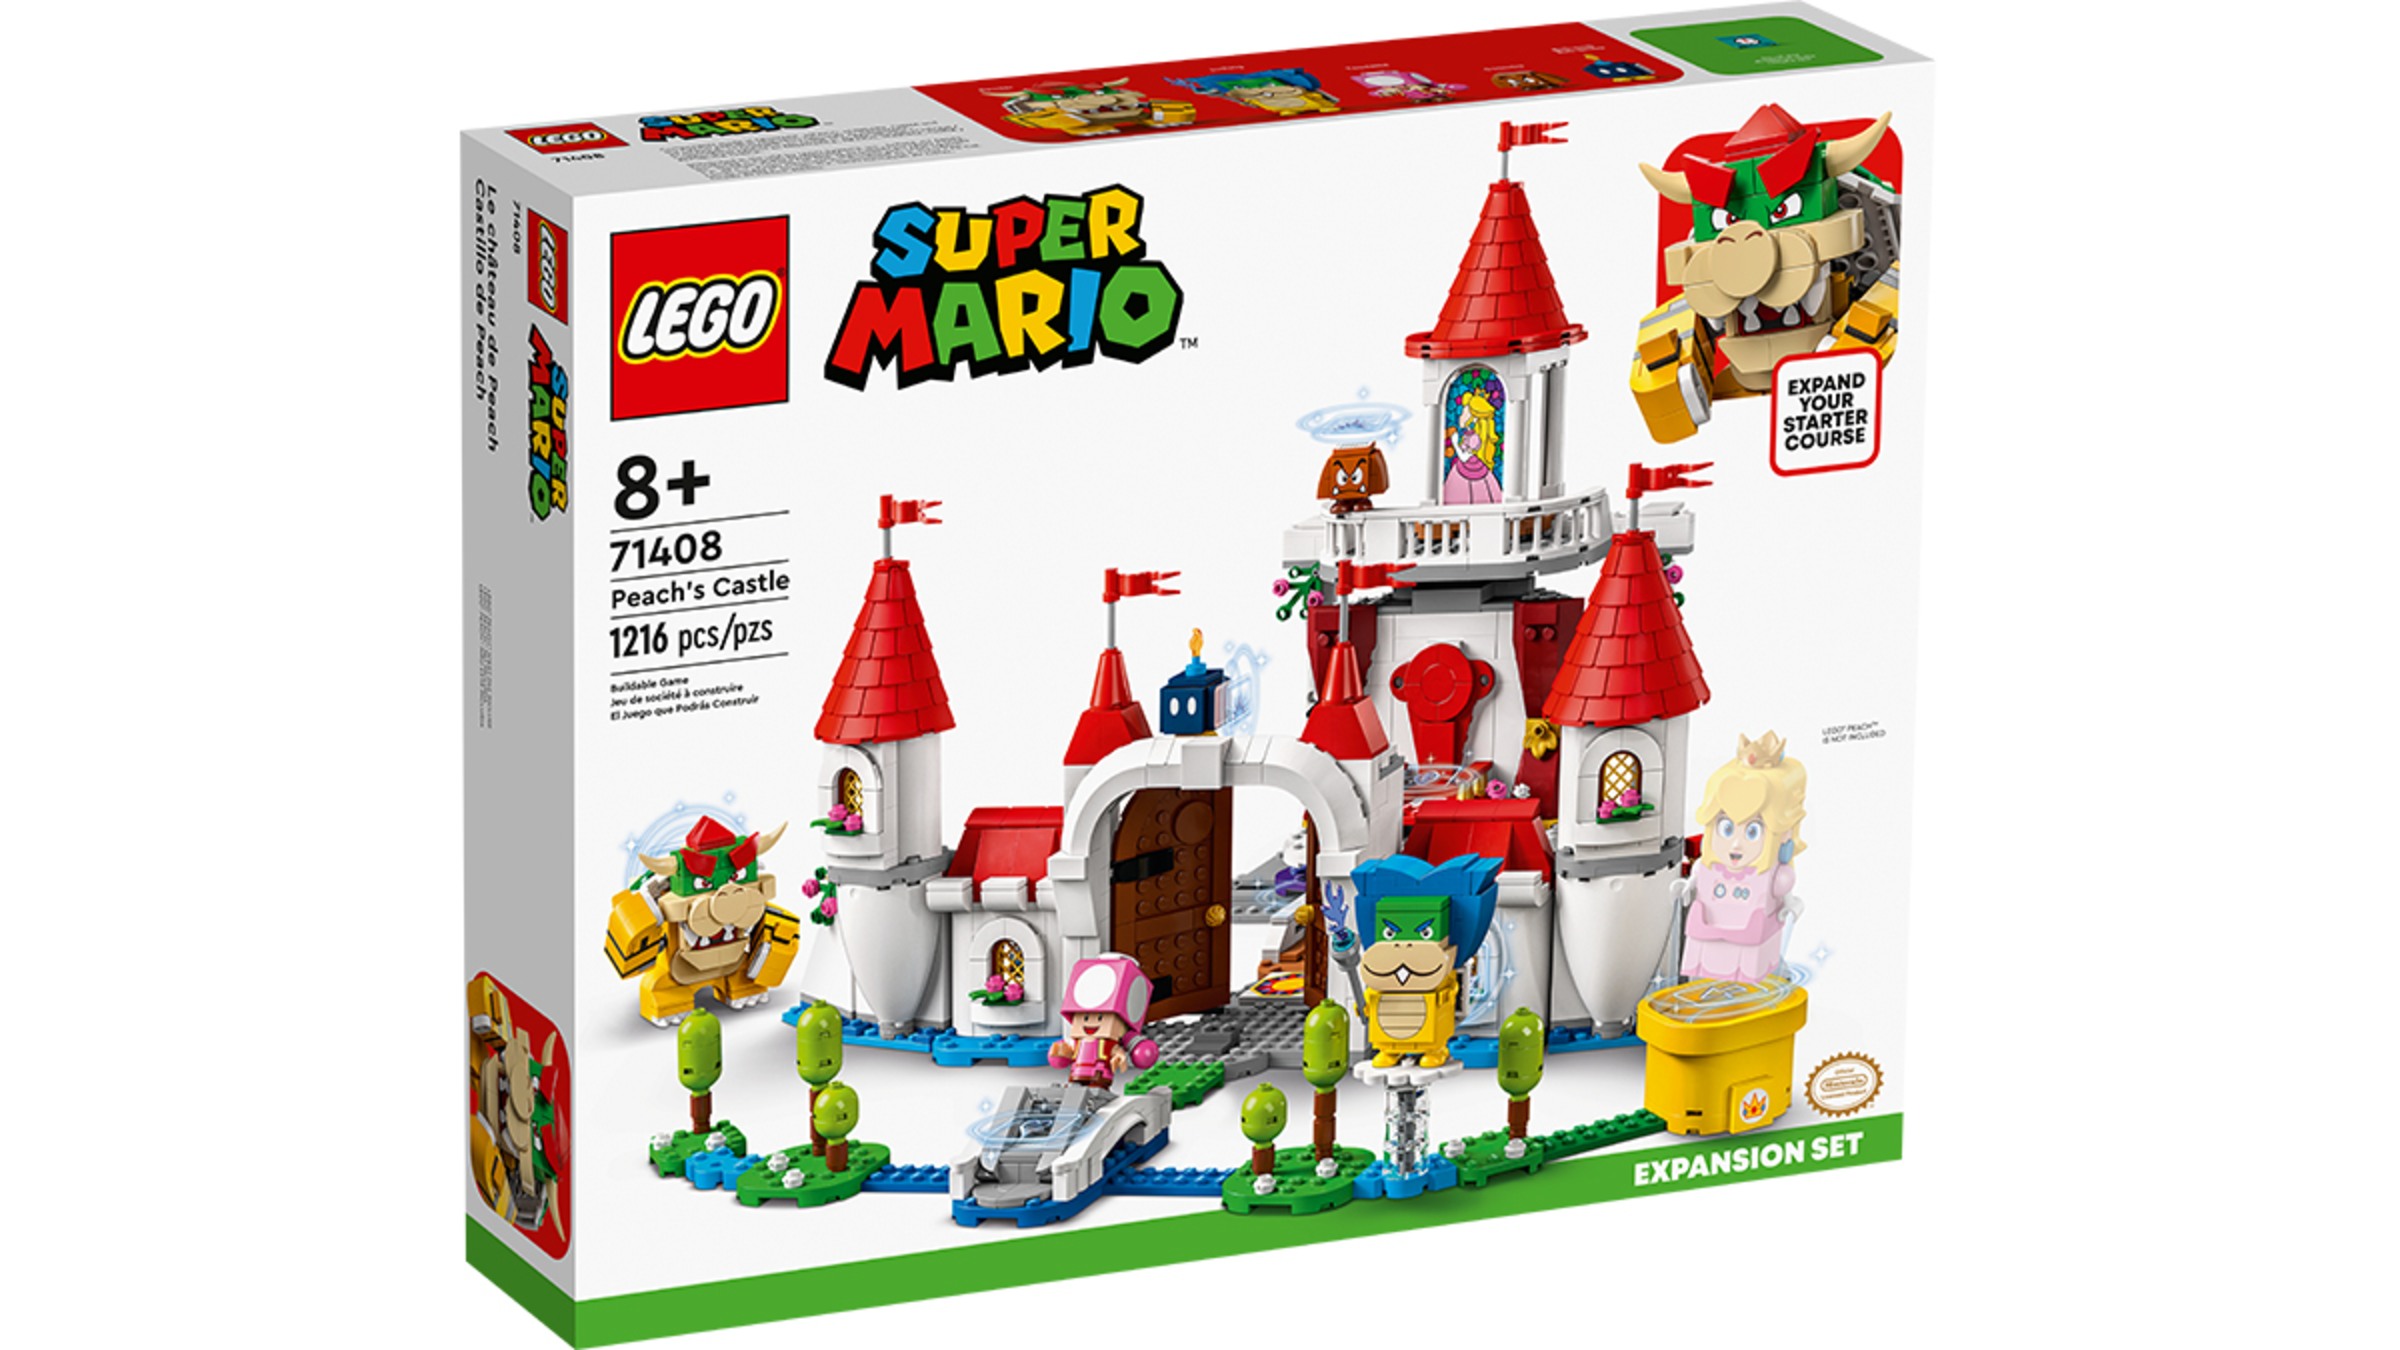 LEGO® Super Mario™ Peach's Castle Expansion Set - Nintendo Official Site